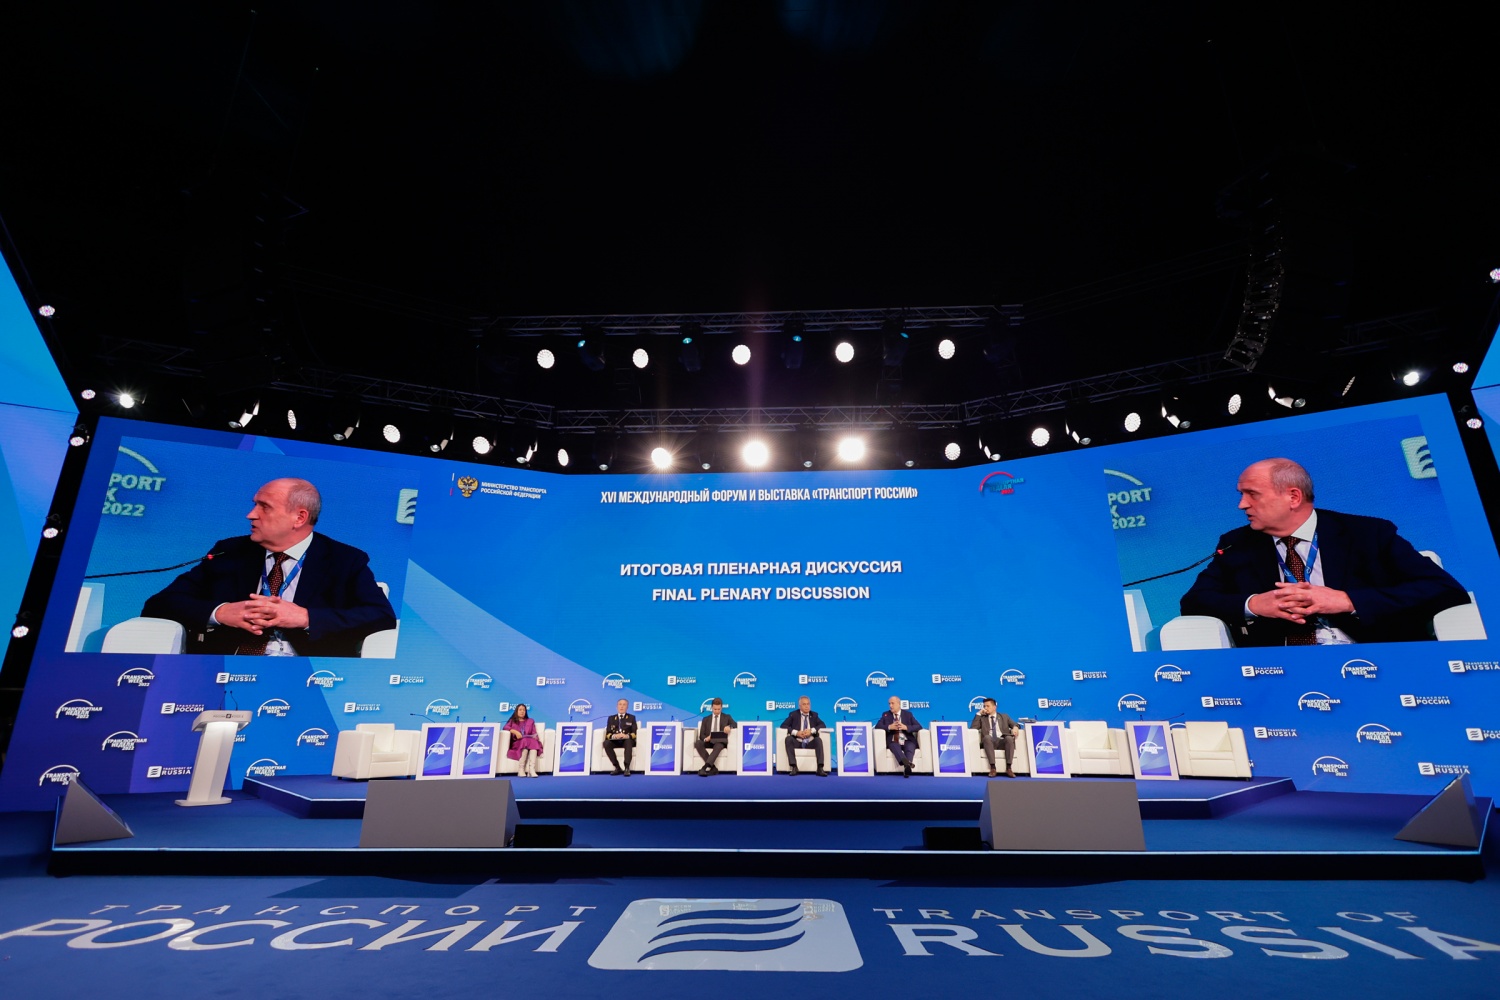  Завершила деловую программу Форума «Транспорт России» итоговая пленарная дискуссия